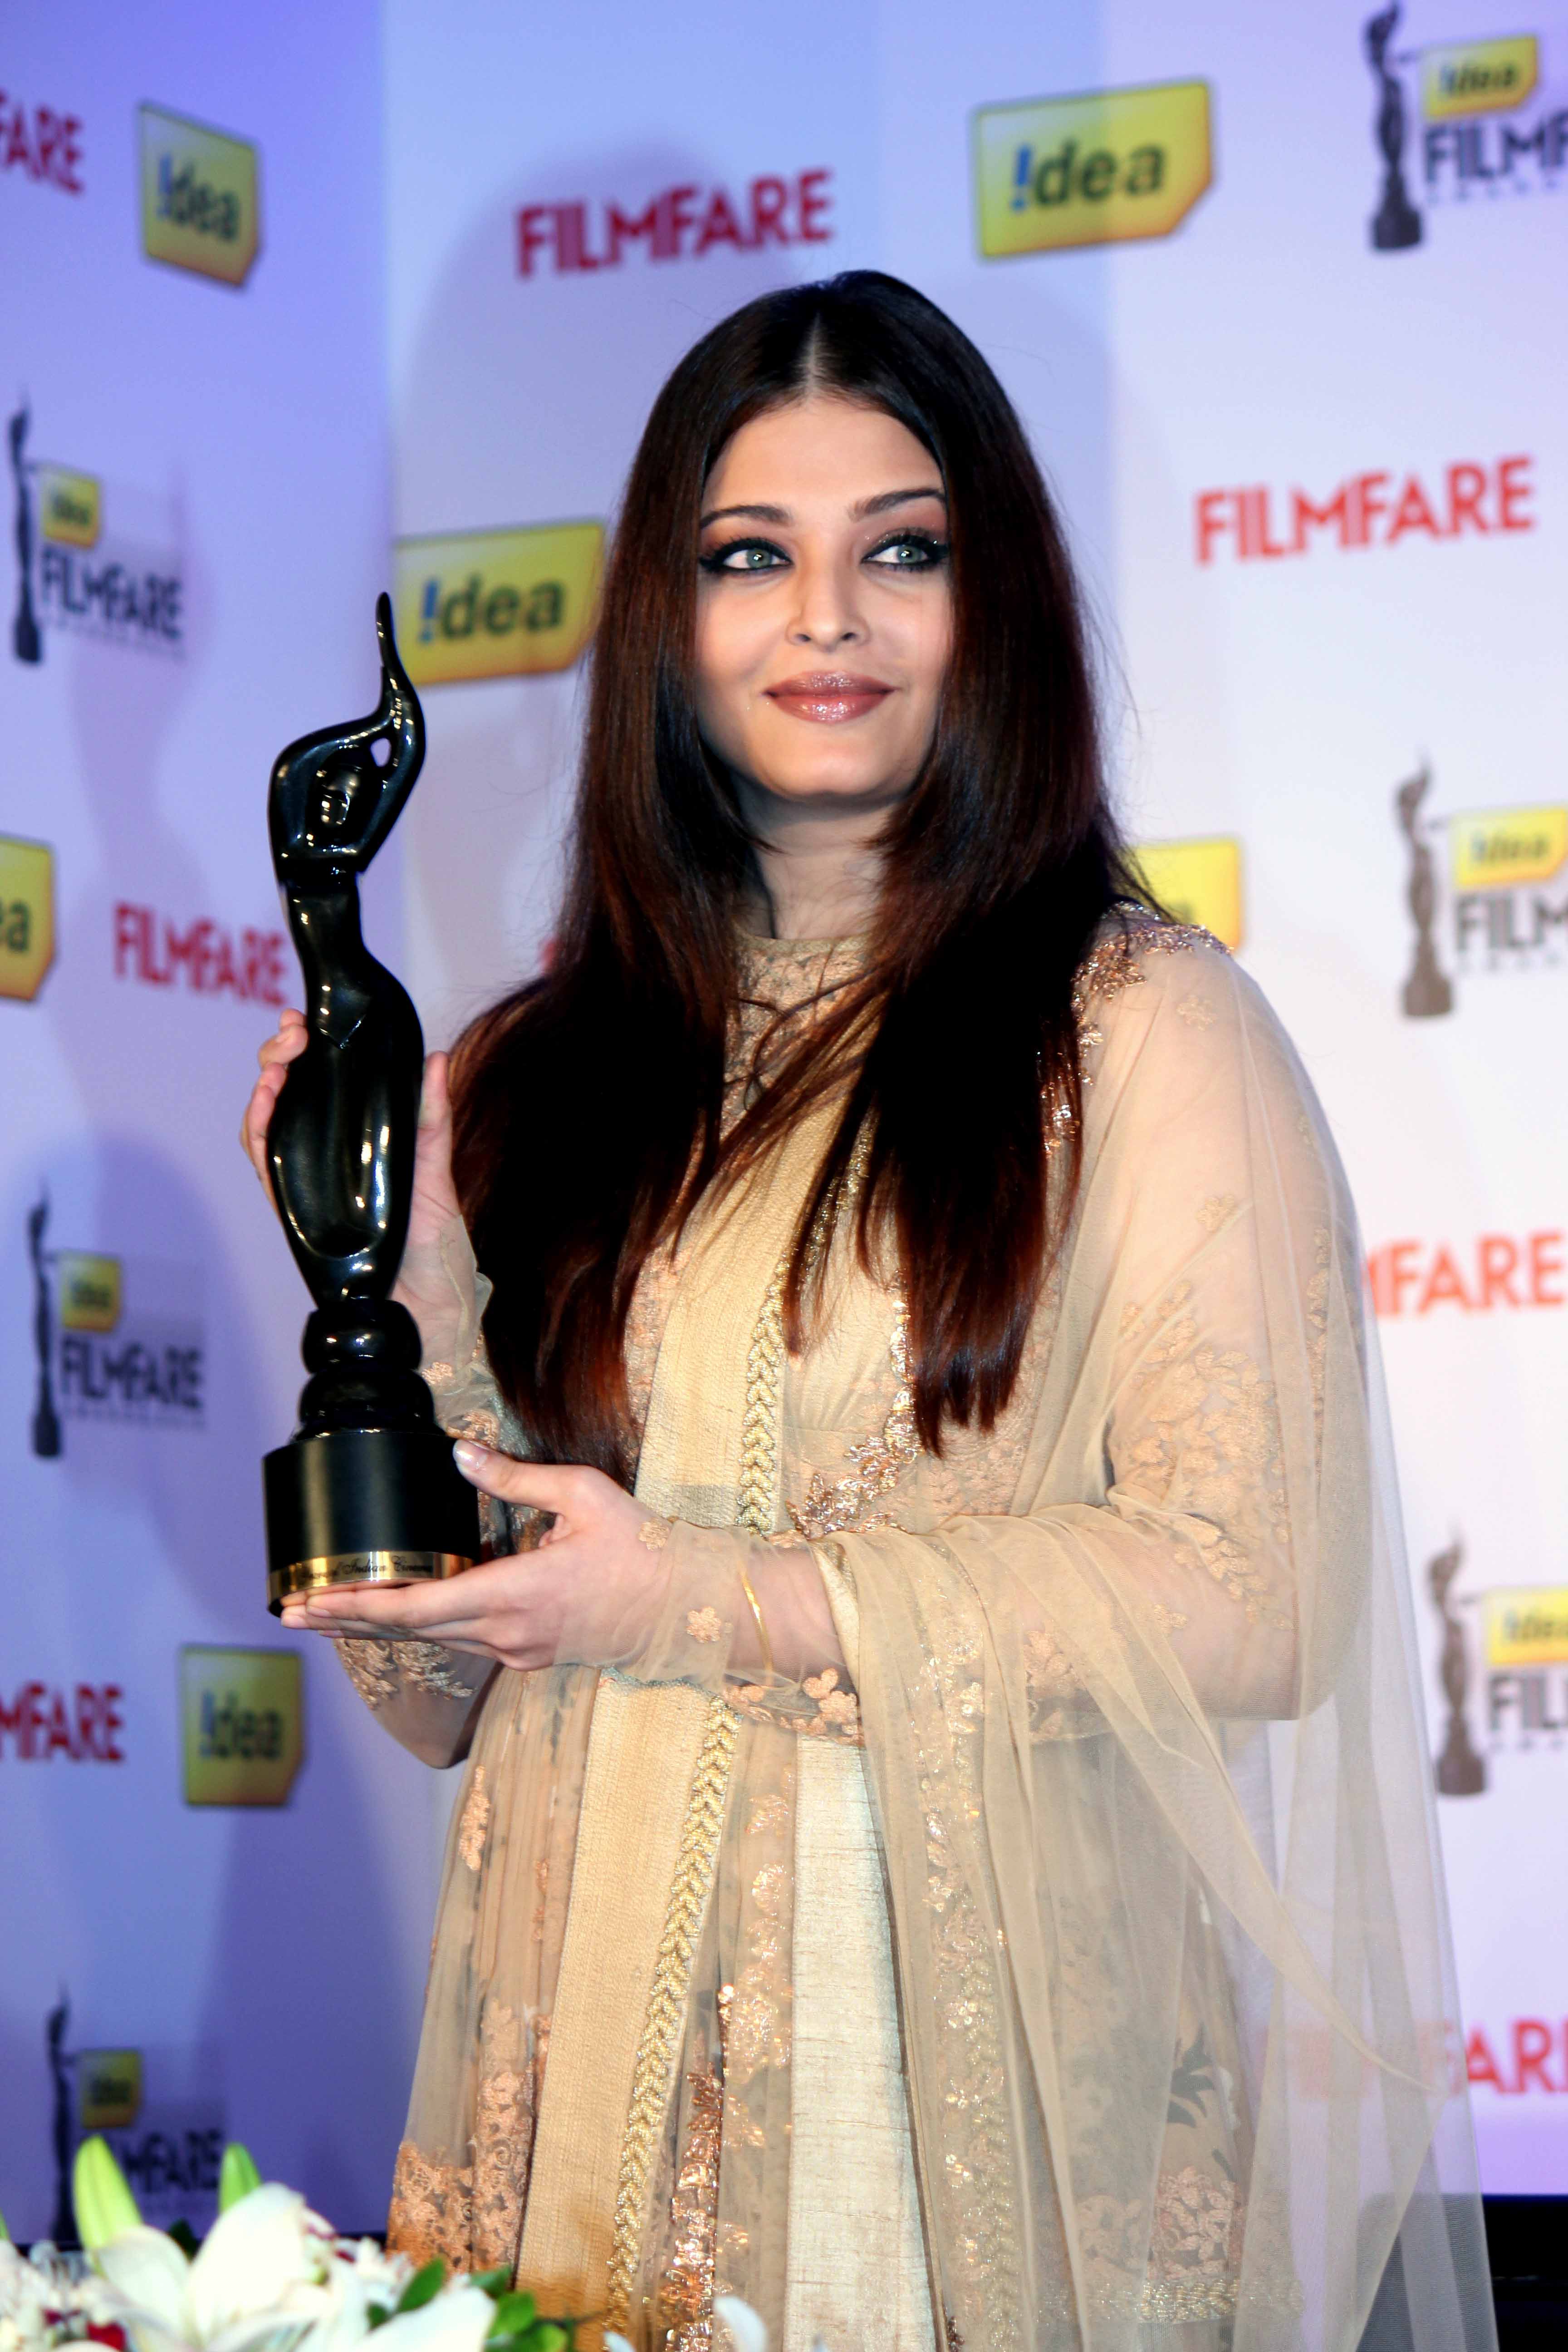 Aishwarya-Rai-at-58th-Film-Fare-Awards-Media-Meet-Gallery